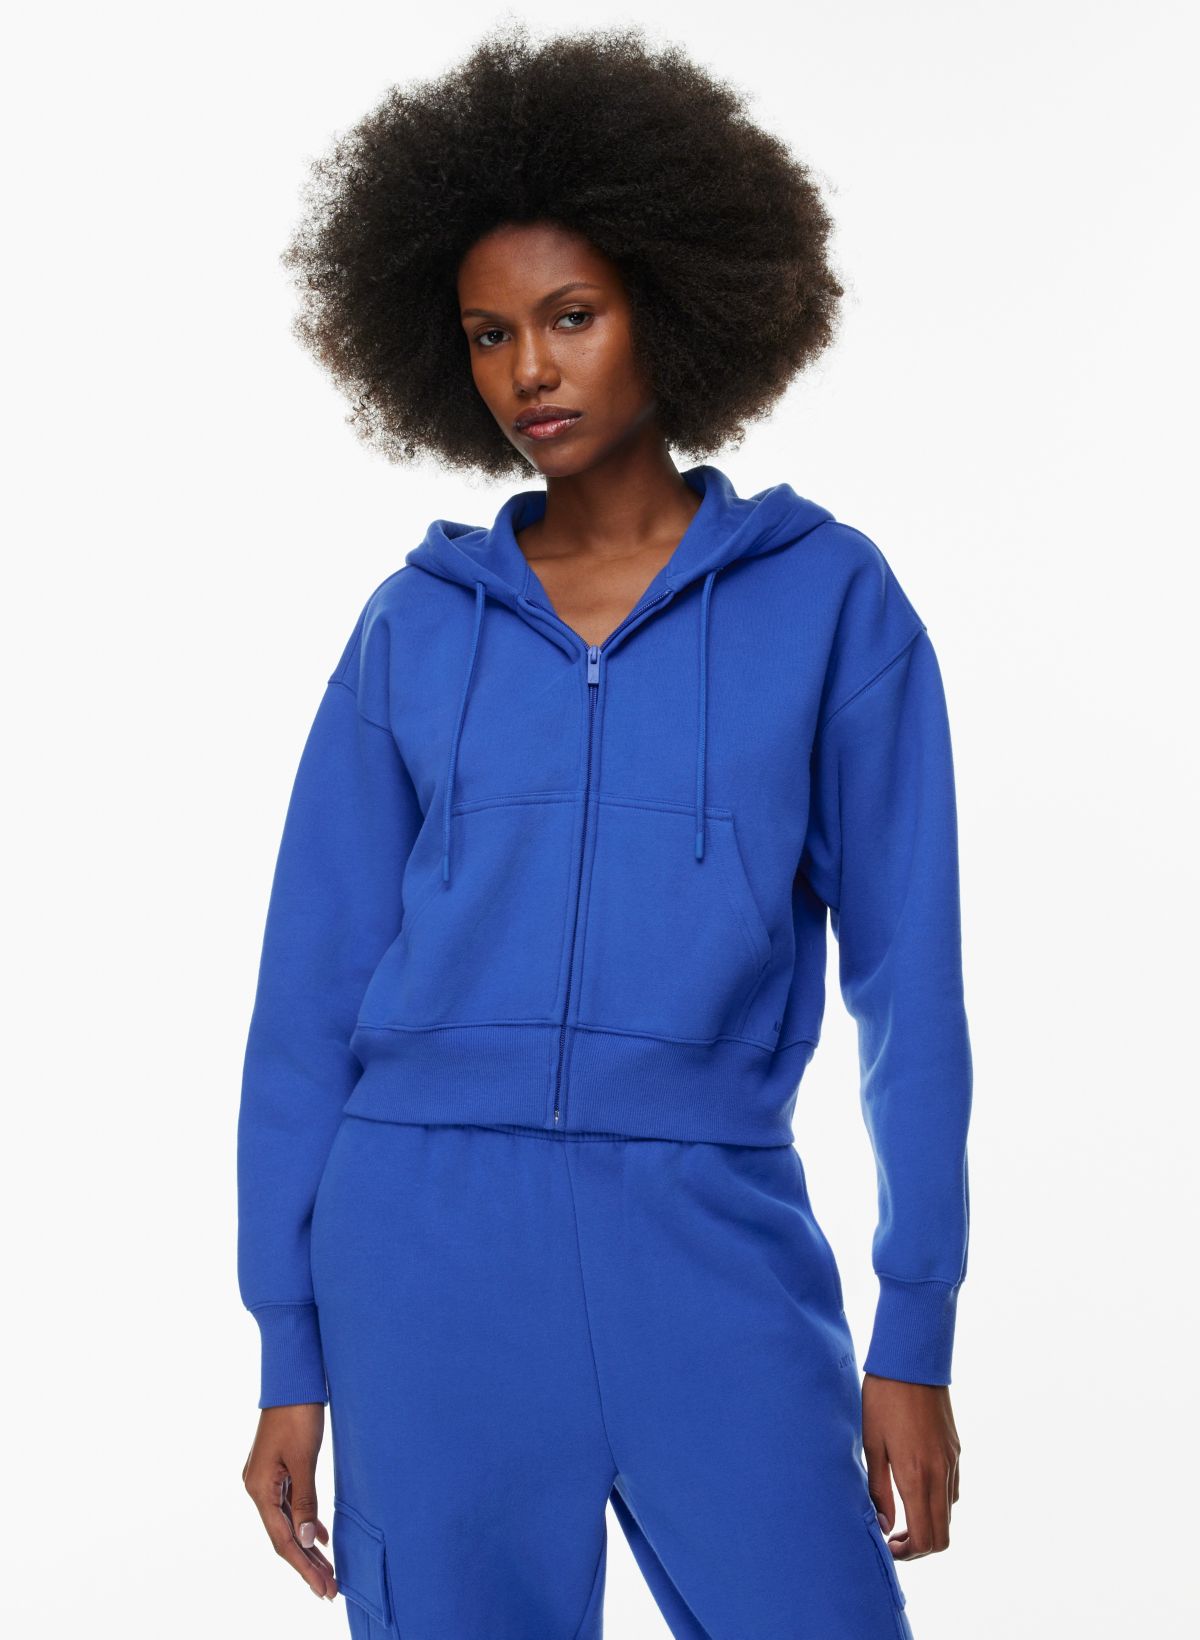 Women's Hoodies - Zip Up & Pullover Sweatshirts , 2X